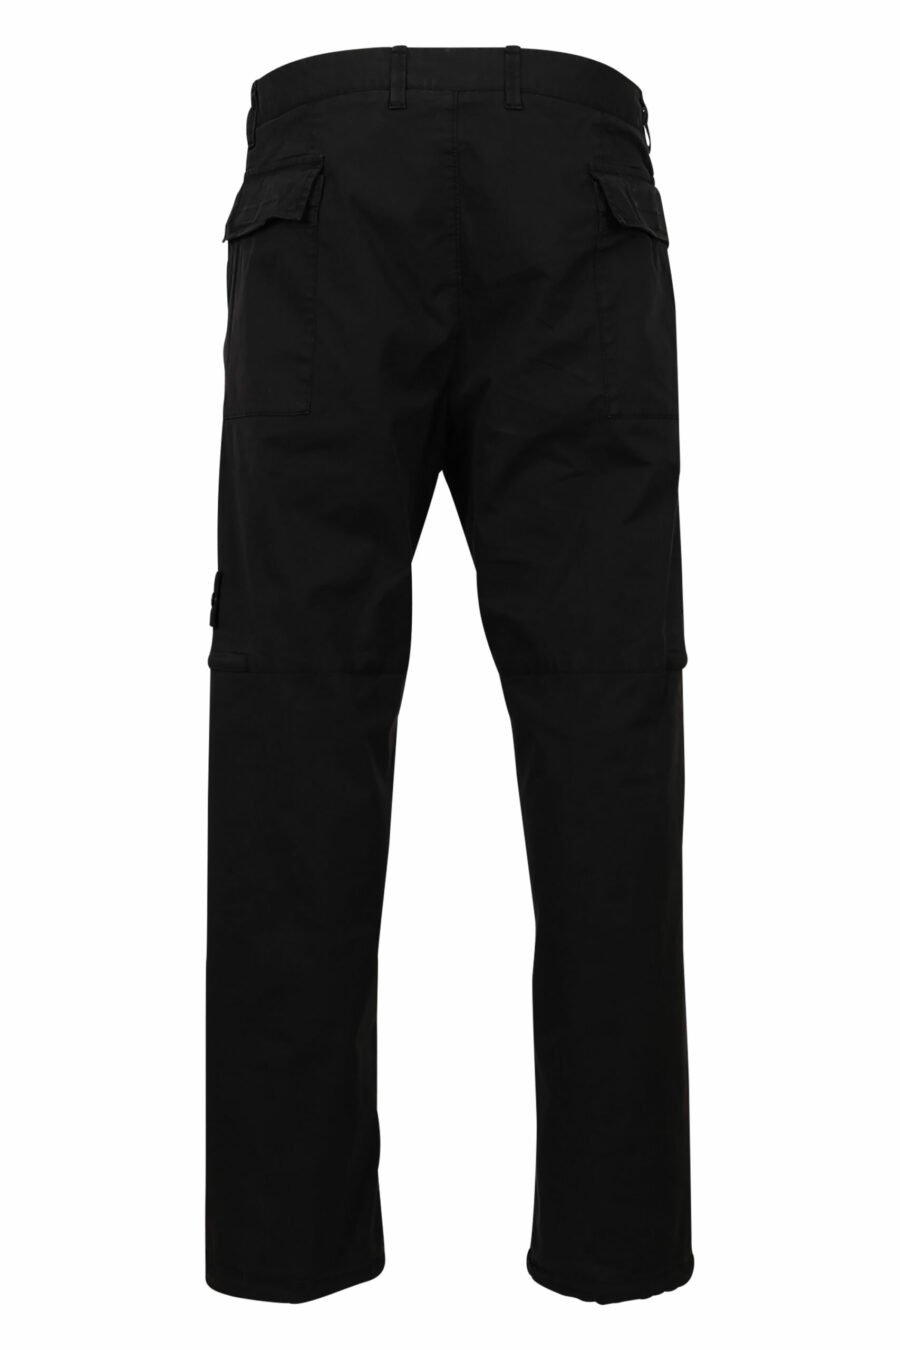 Pantalon cargo noir avec poches et patch du logo - 8052572731846 2 scaled